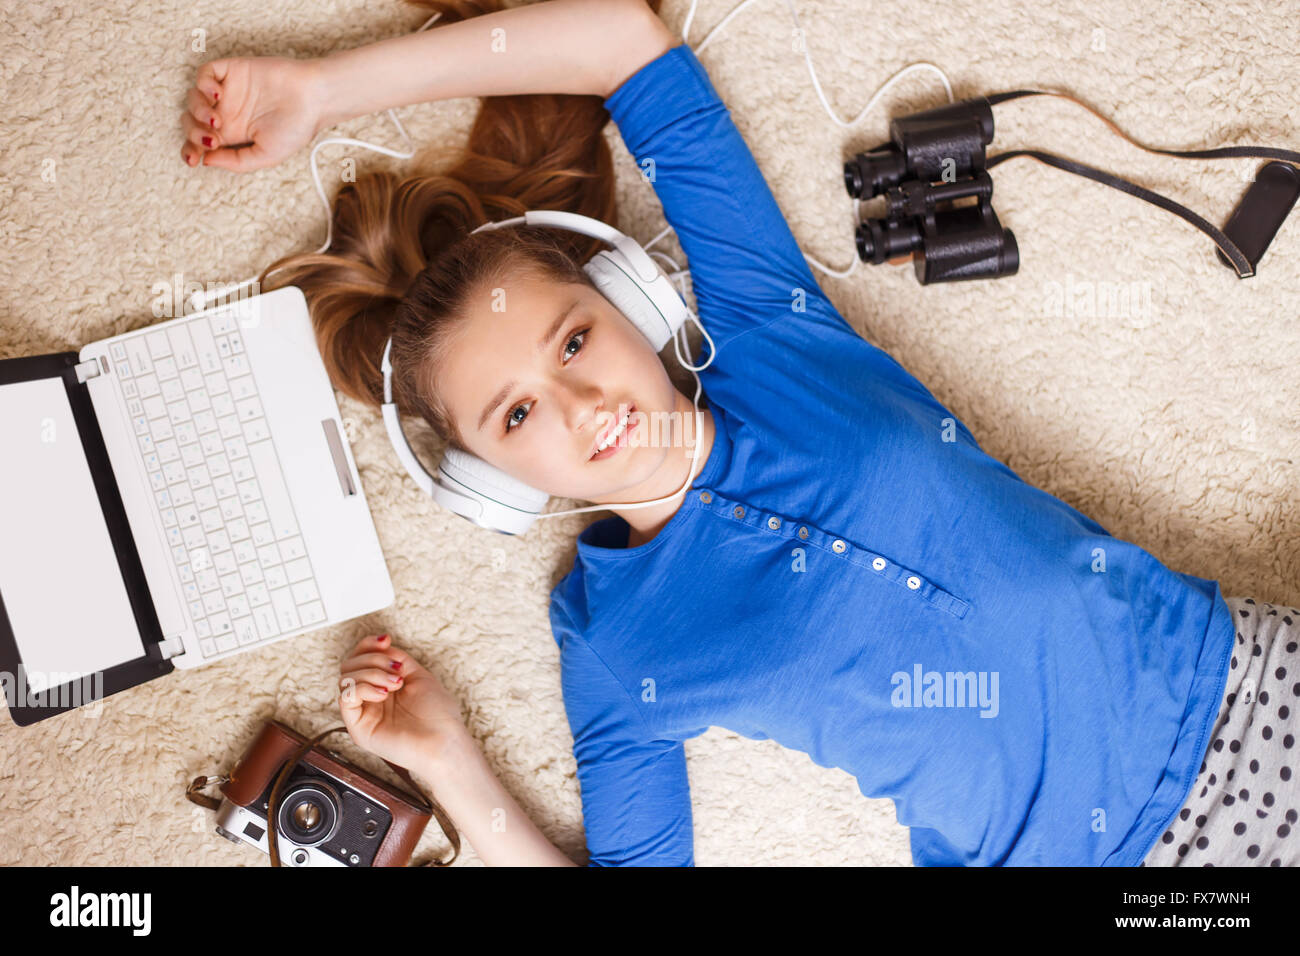 Junge lächelnde Teenager-Mädchen in Kopfhörer Ohrhörer mit Laptop Kamera und Fernglas auf dem Boden liegend. Glücklich träumen teenager Stockfoto